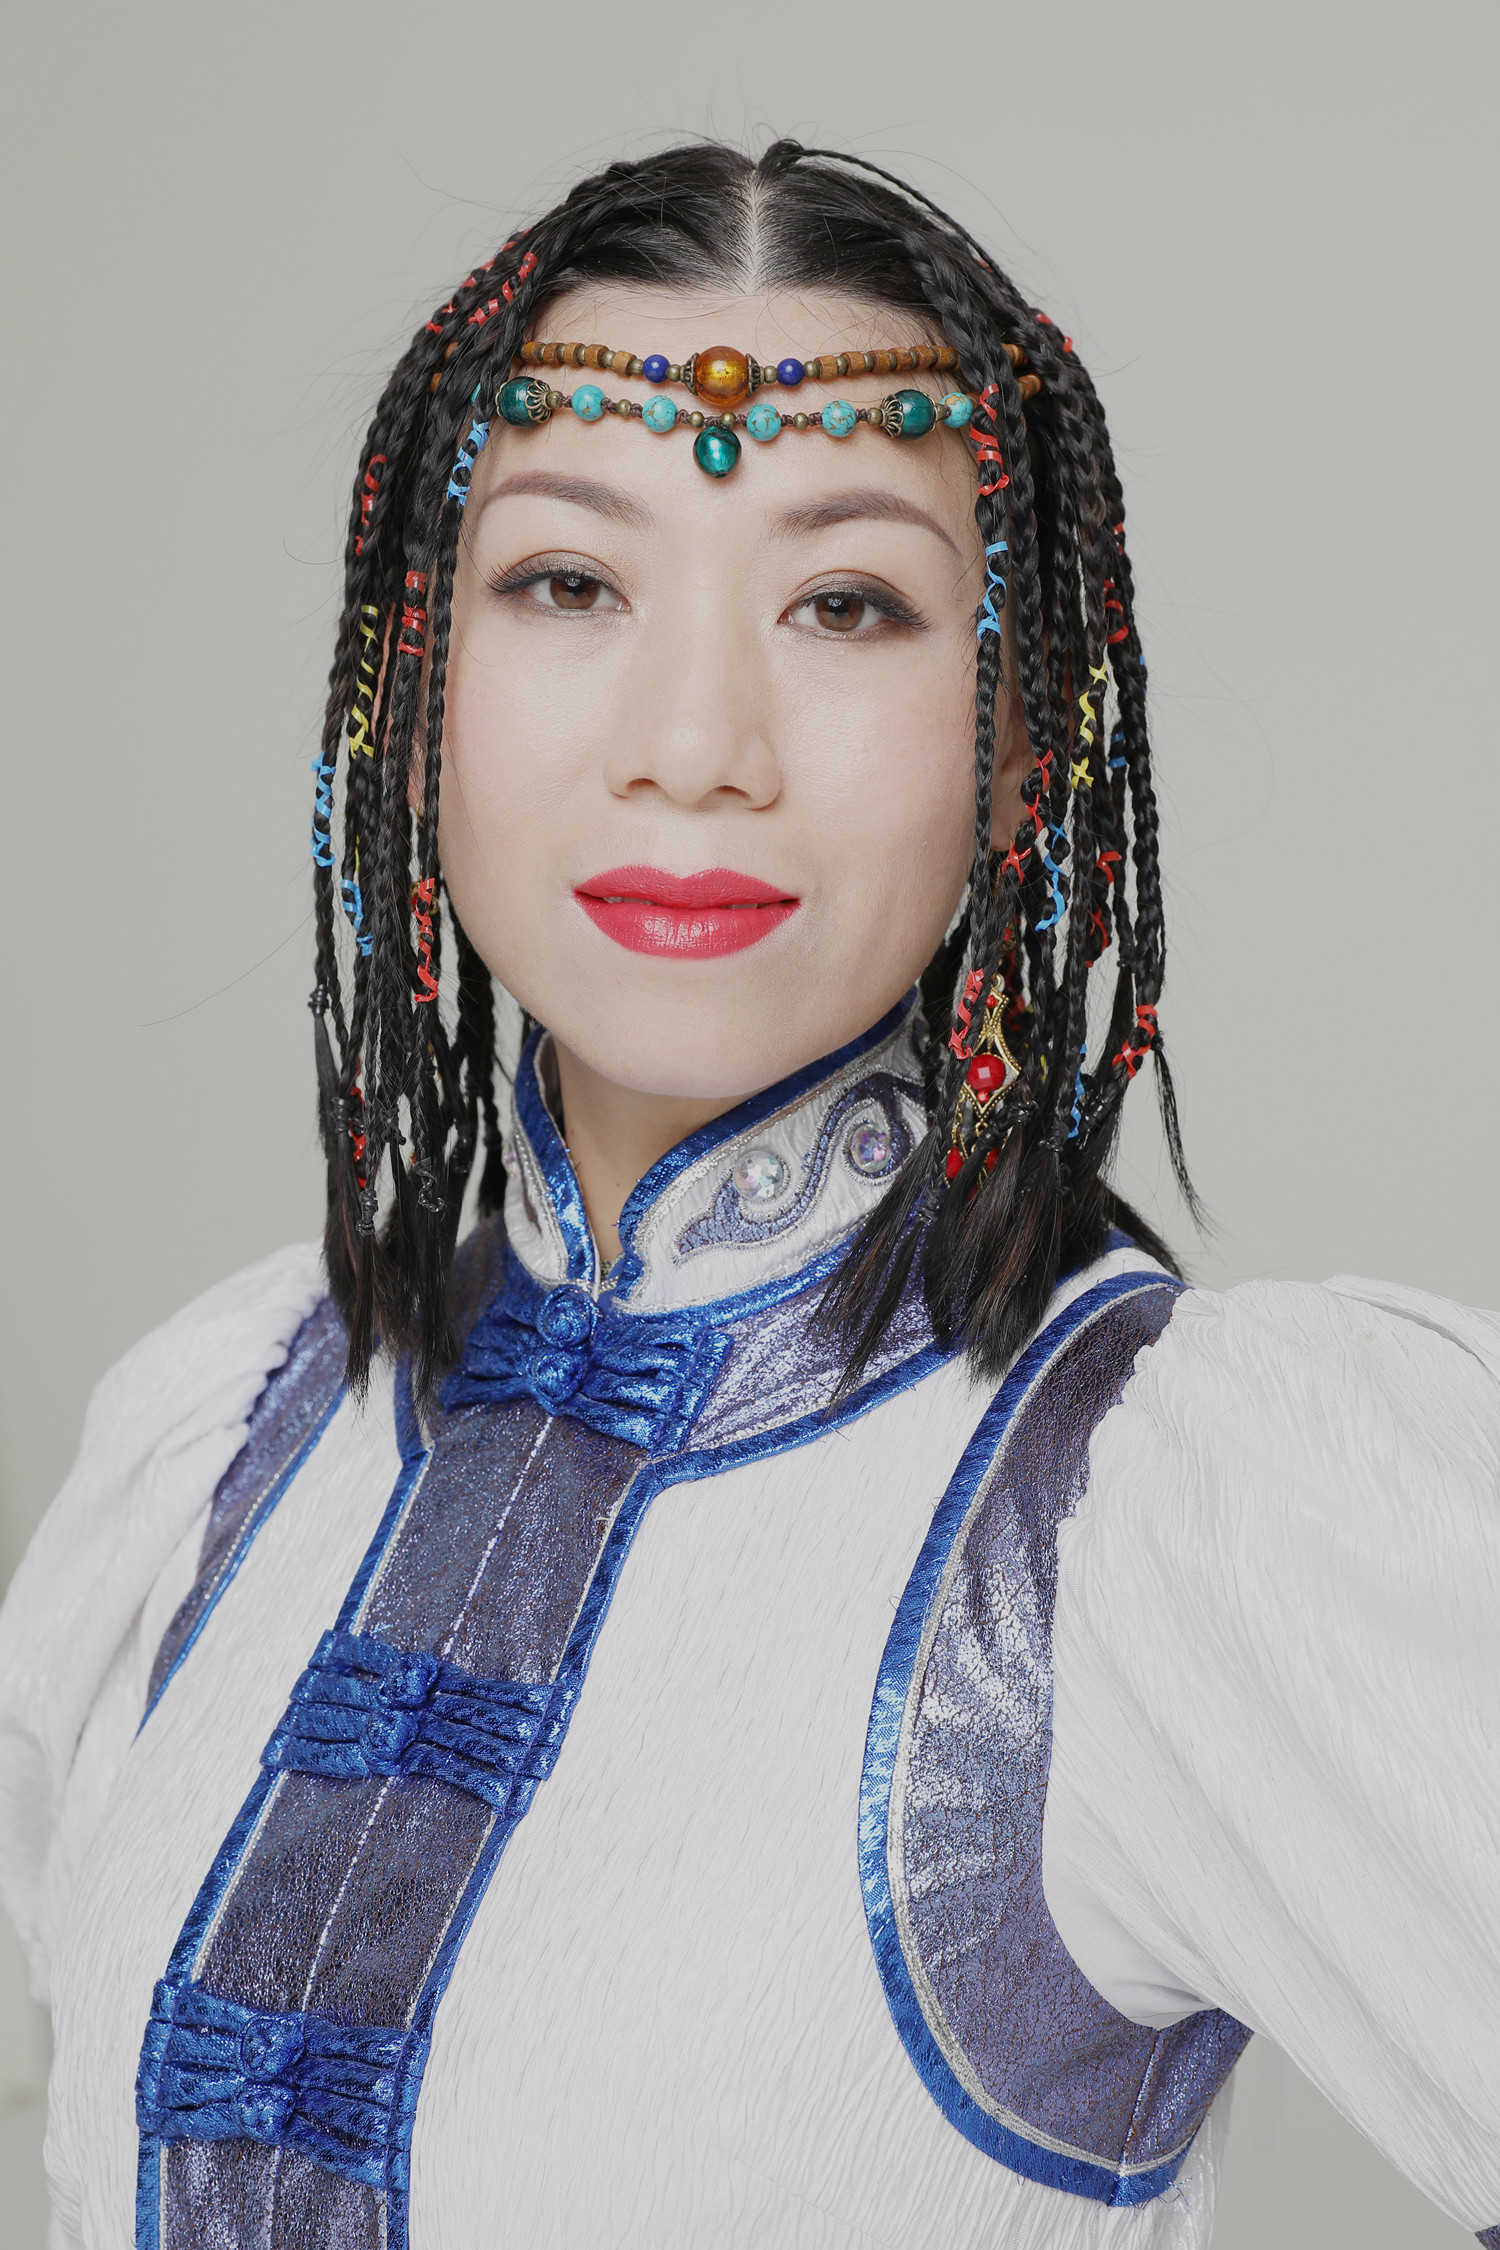 自蒙古族歌手乌尔那真演唱了草原歌曲《醉了醉了》并由星光艺声唱片